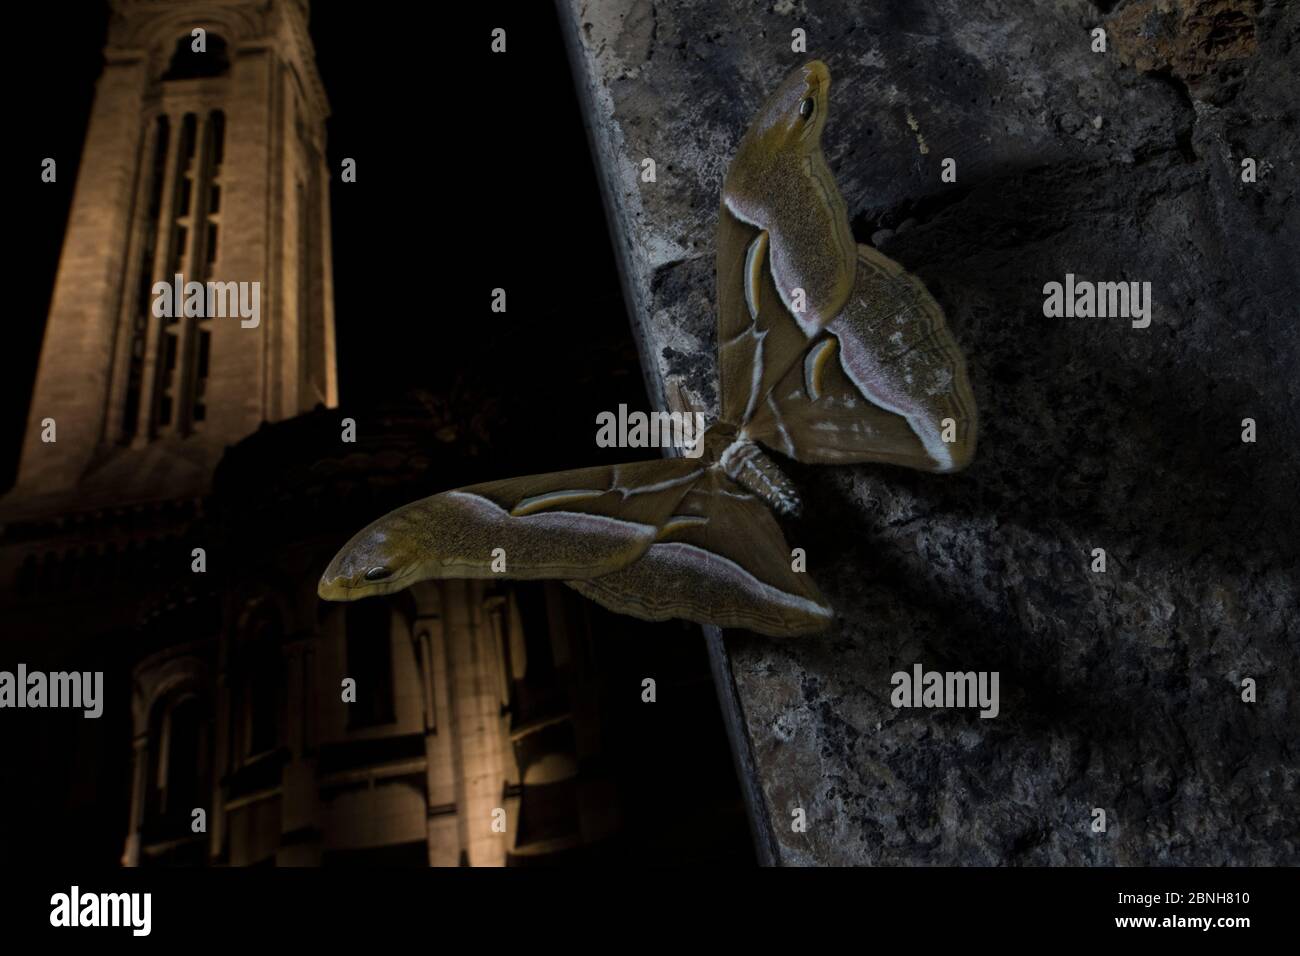 Ailanthus silkmoth (Samia cynthia) une espèce introduite, prise la nuit près du Sacré-cœur, Paris, France septembre Banque D'Images